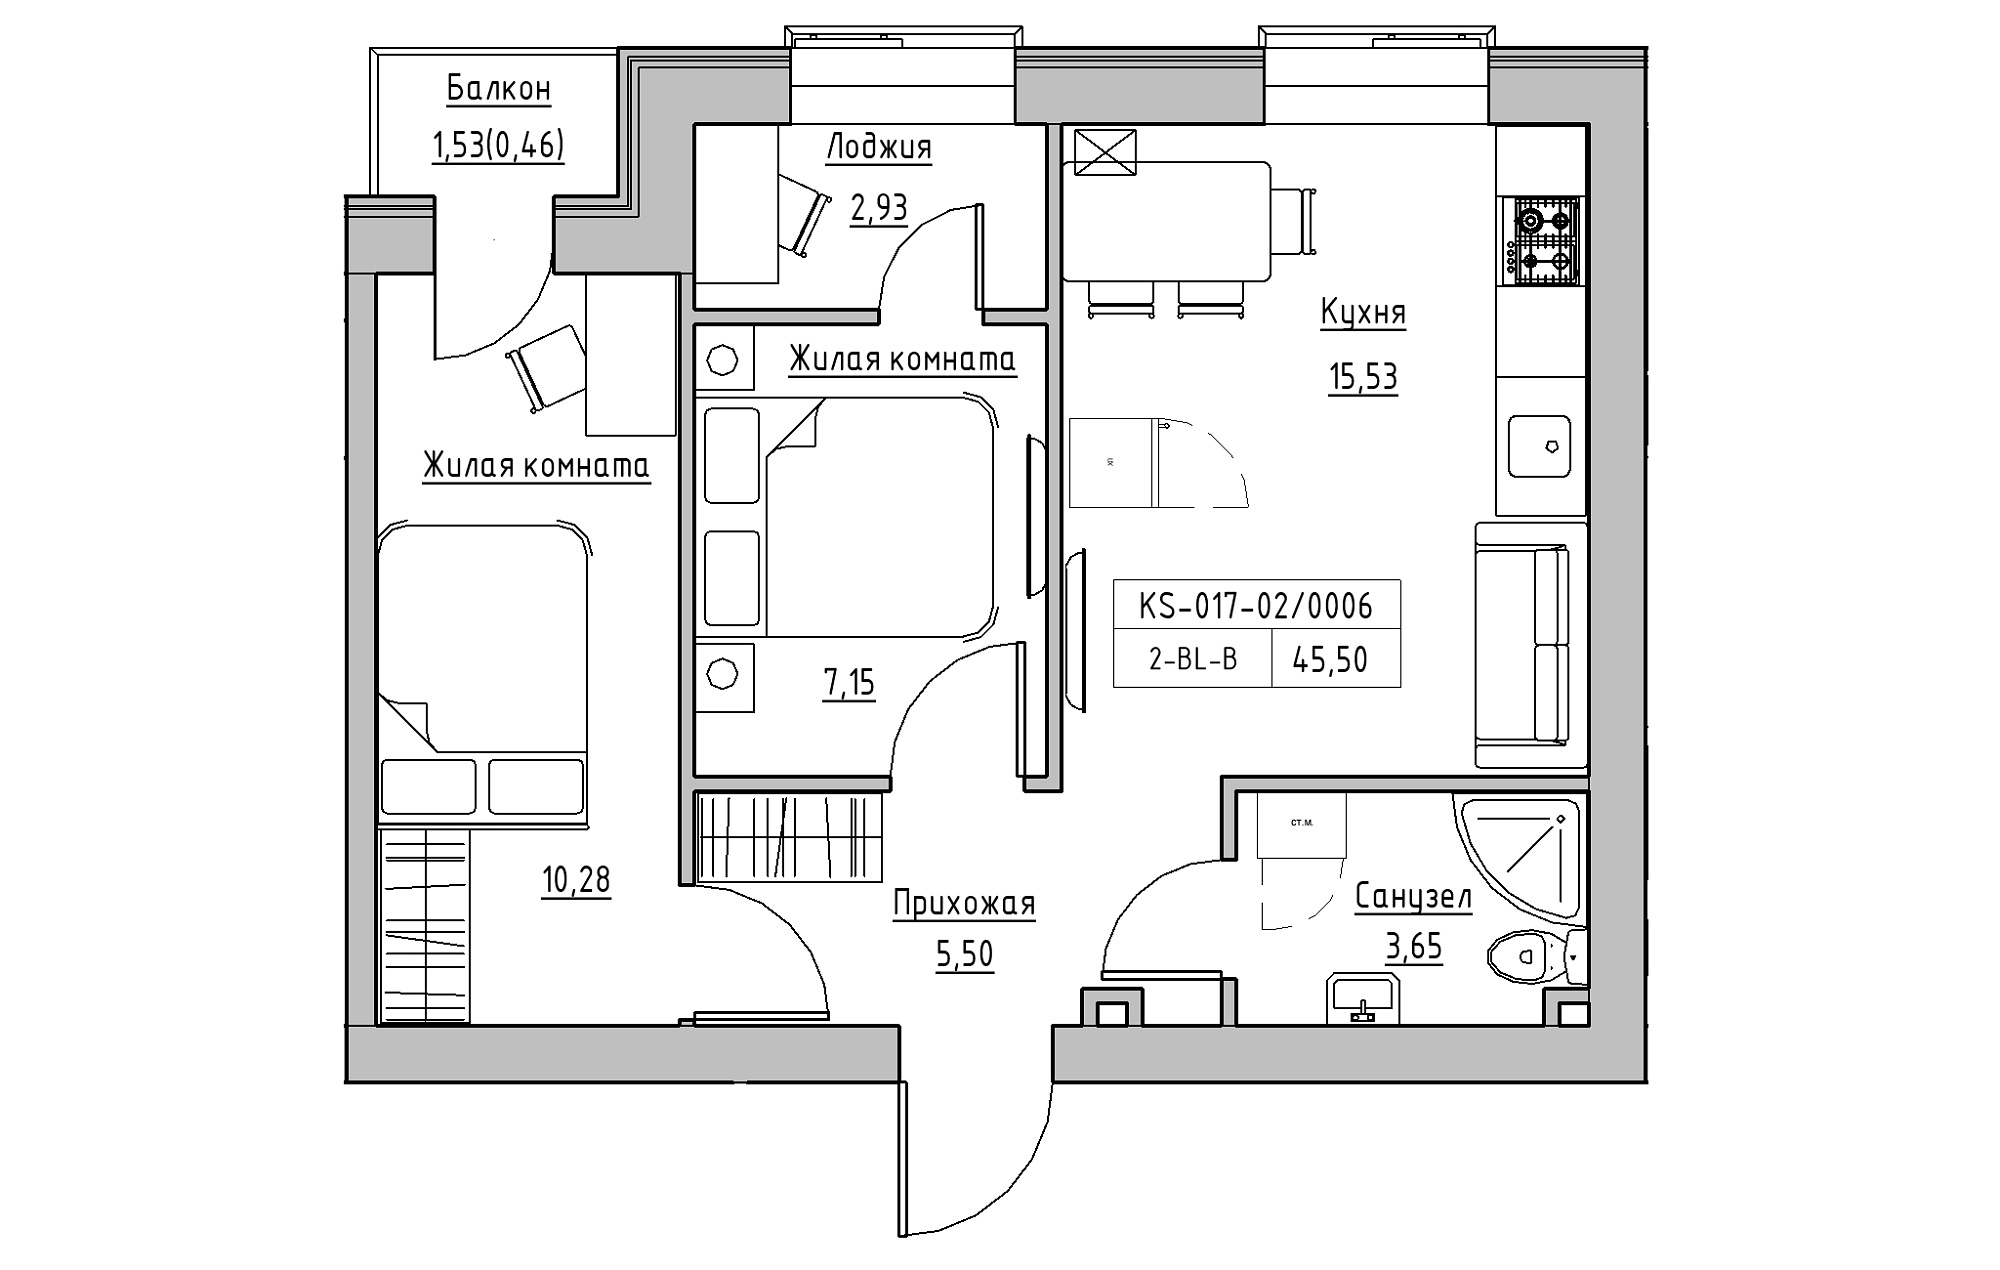 Планировка 2-к квартира площей 45.5м2, KS-017-02/0006.